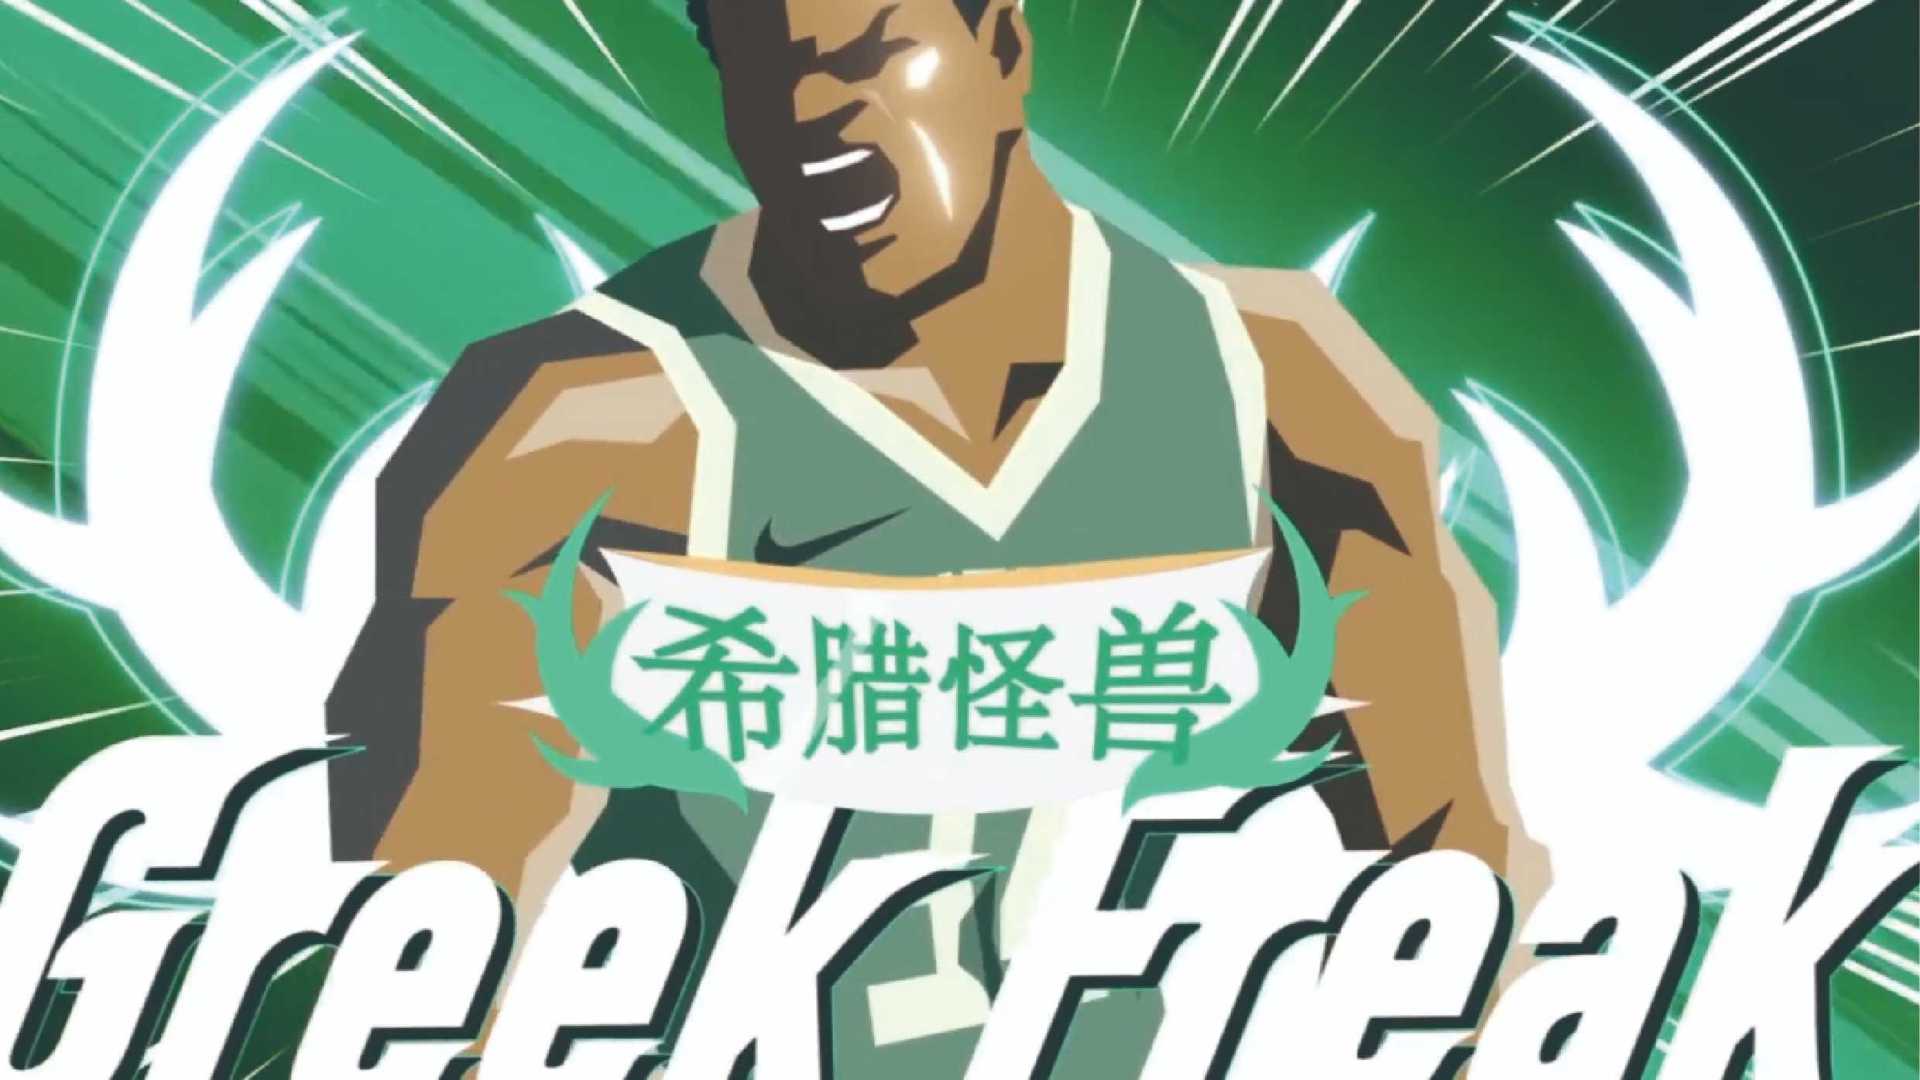 【Nike】动画视频-《字母哥》